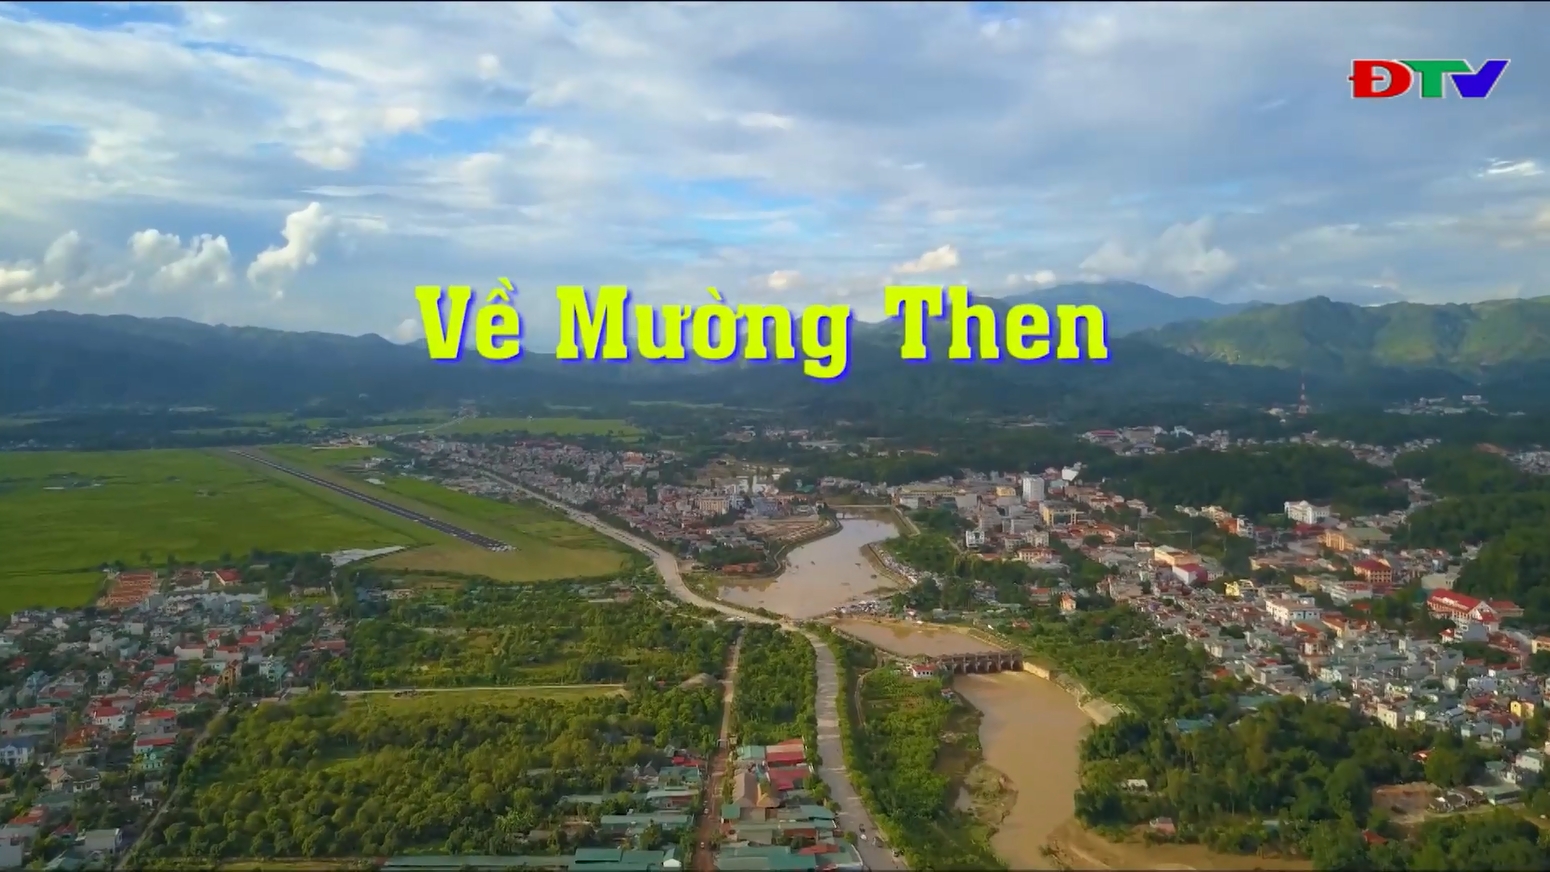 Sắc màu Văn hóa Điện Biên (số 11/2019): Về Mường Then